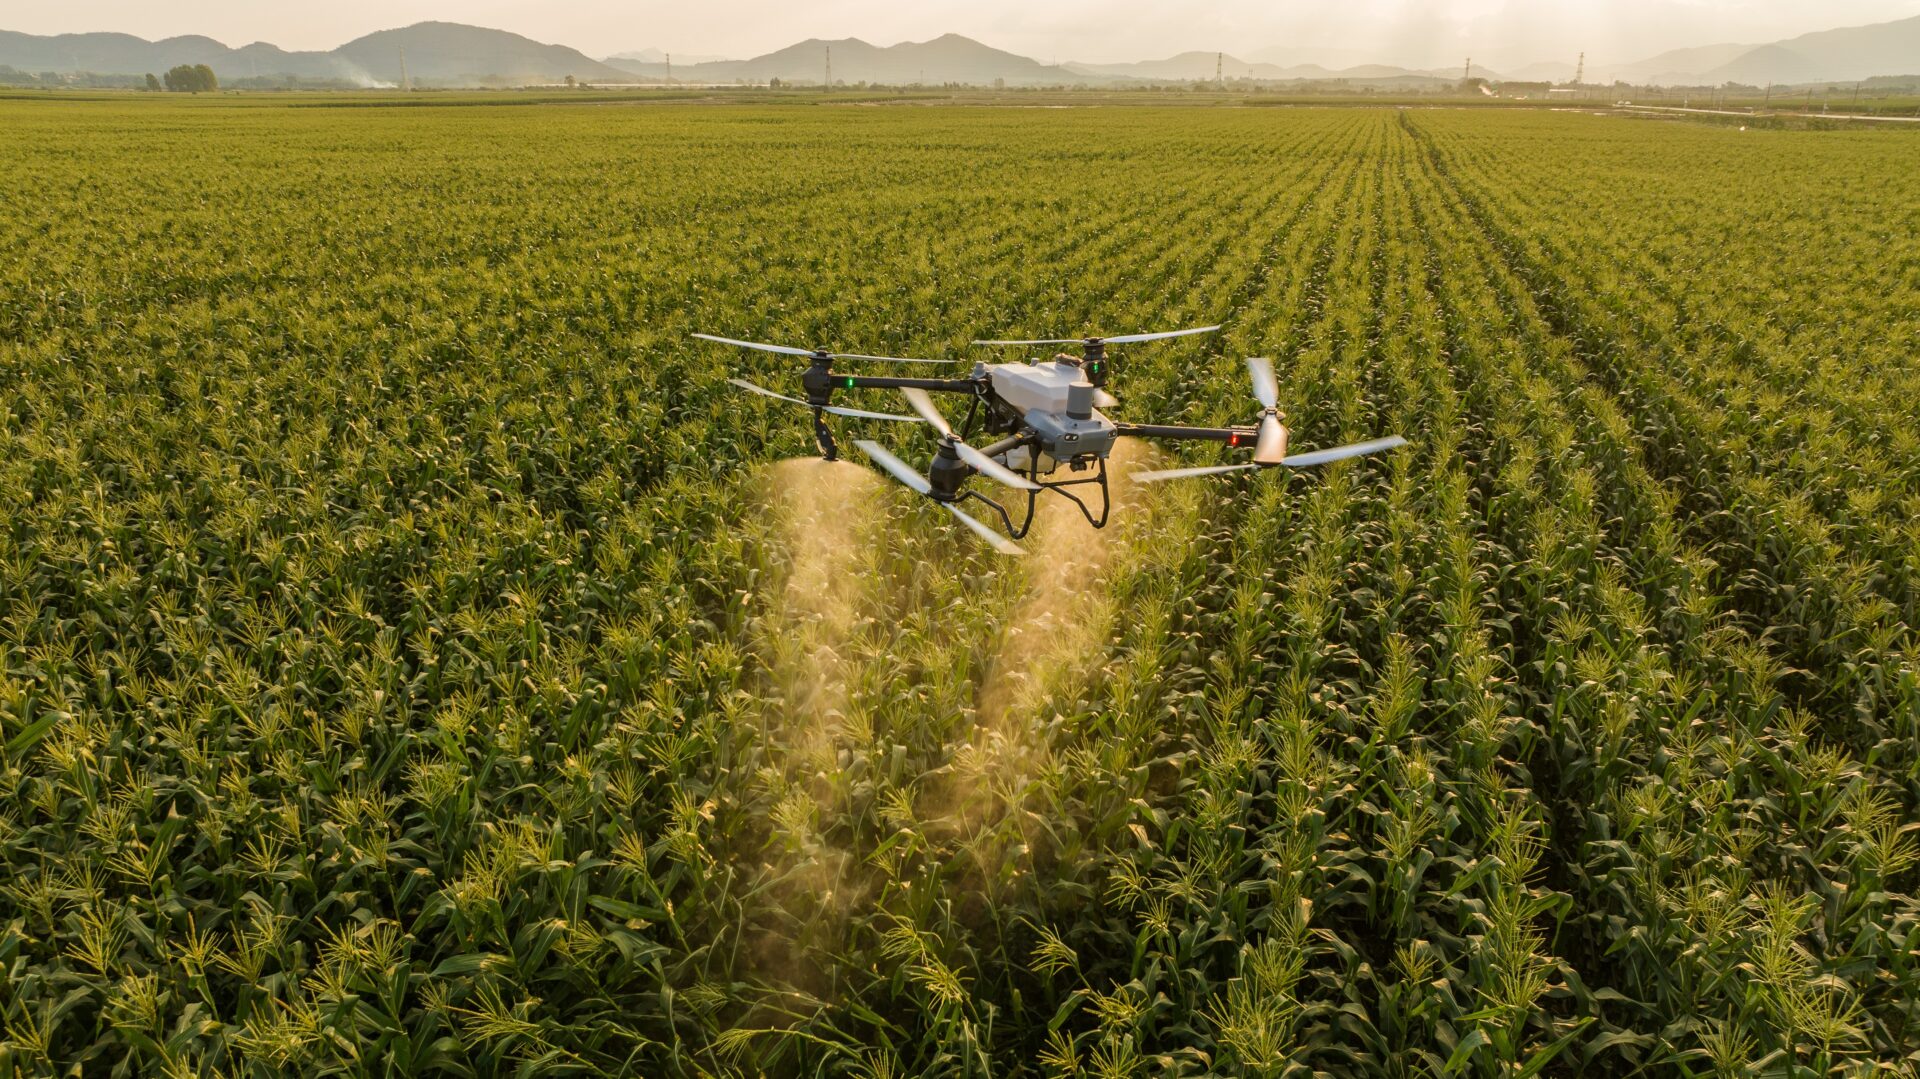 Empresas de máquinas agrícolas apostam em drones para pulverização